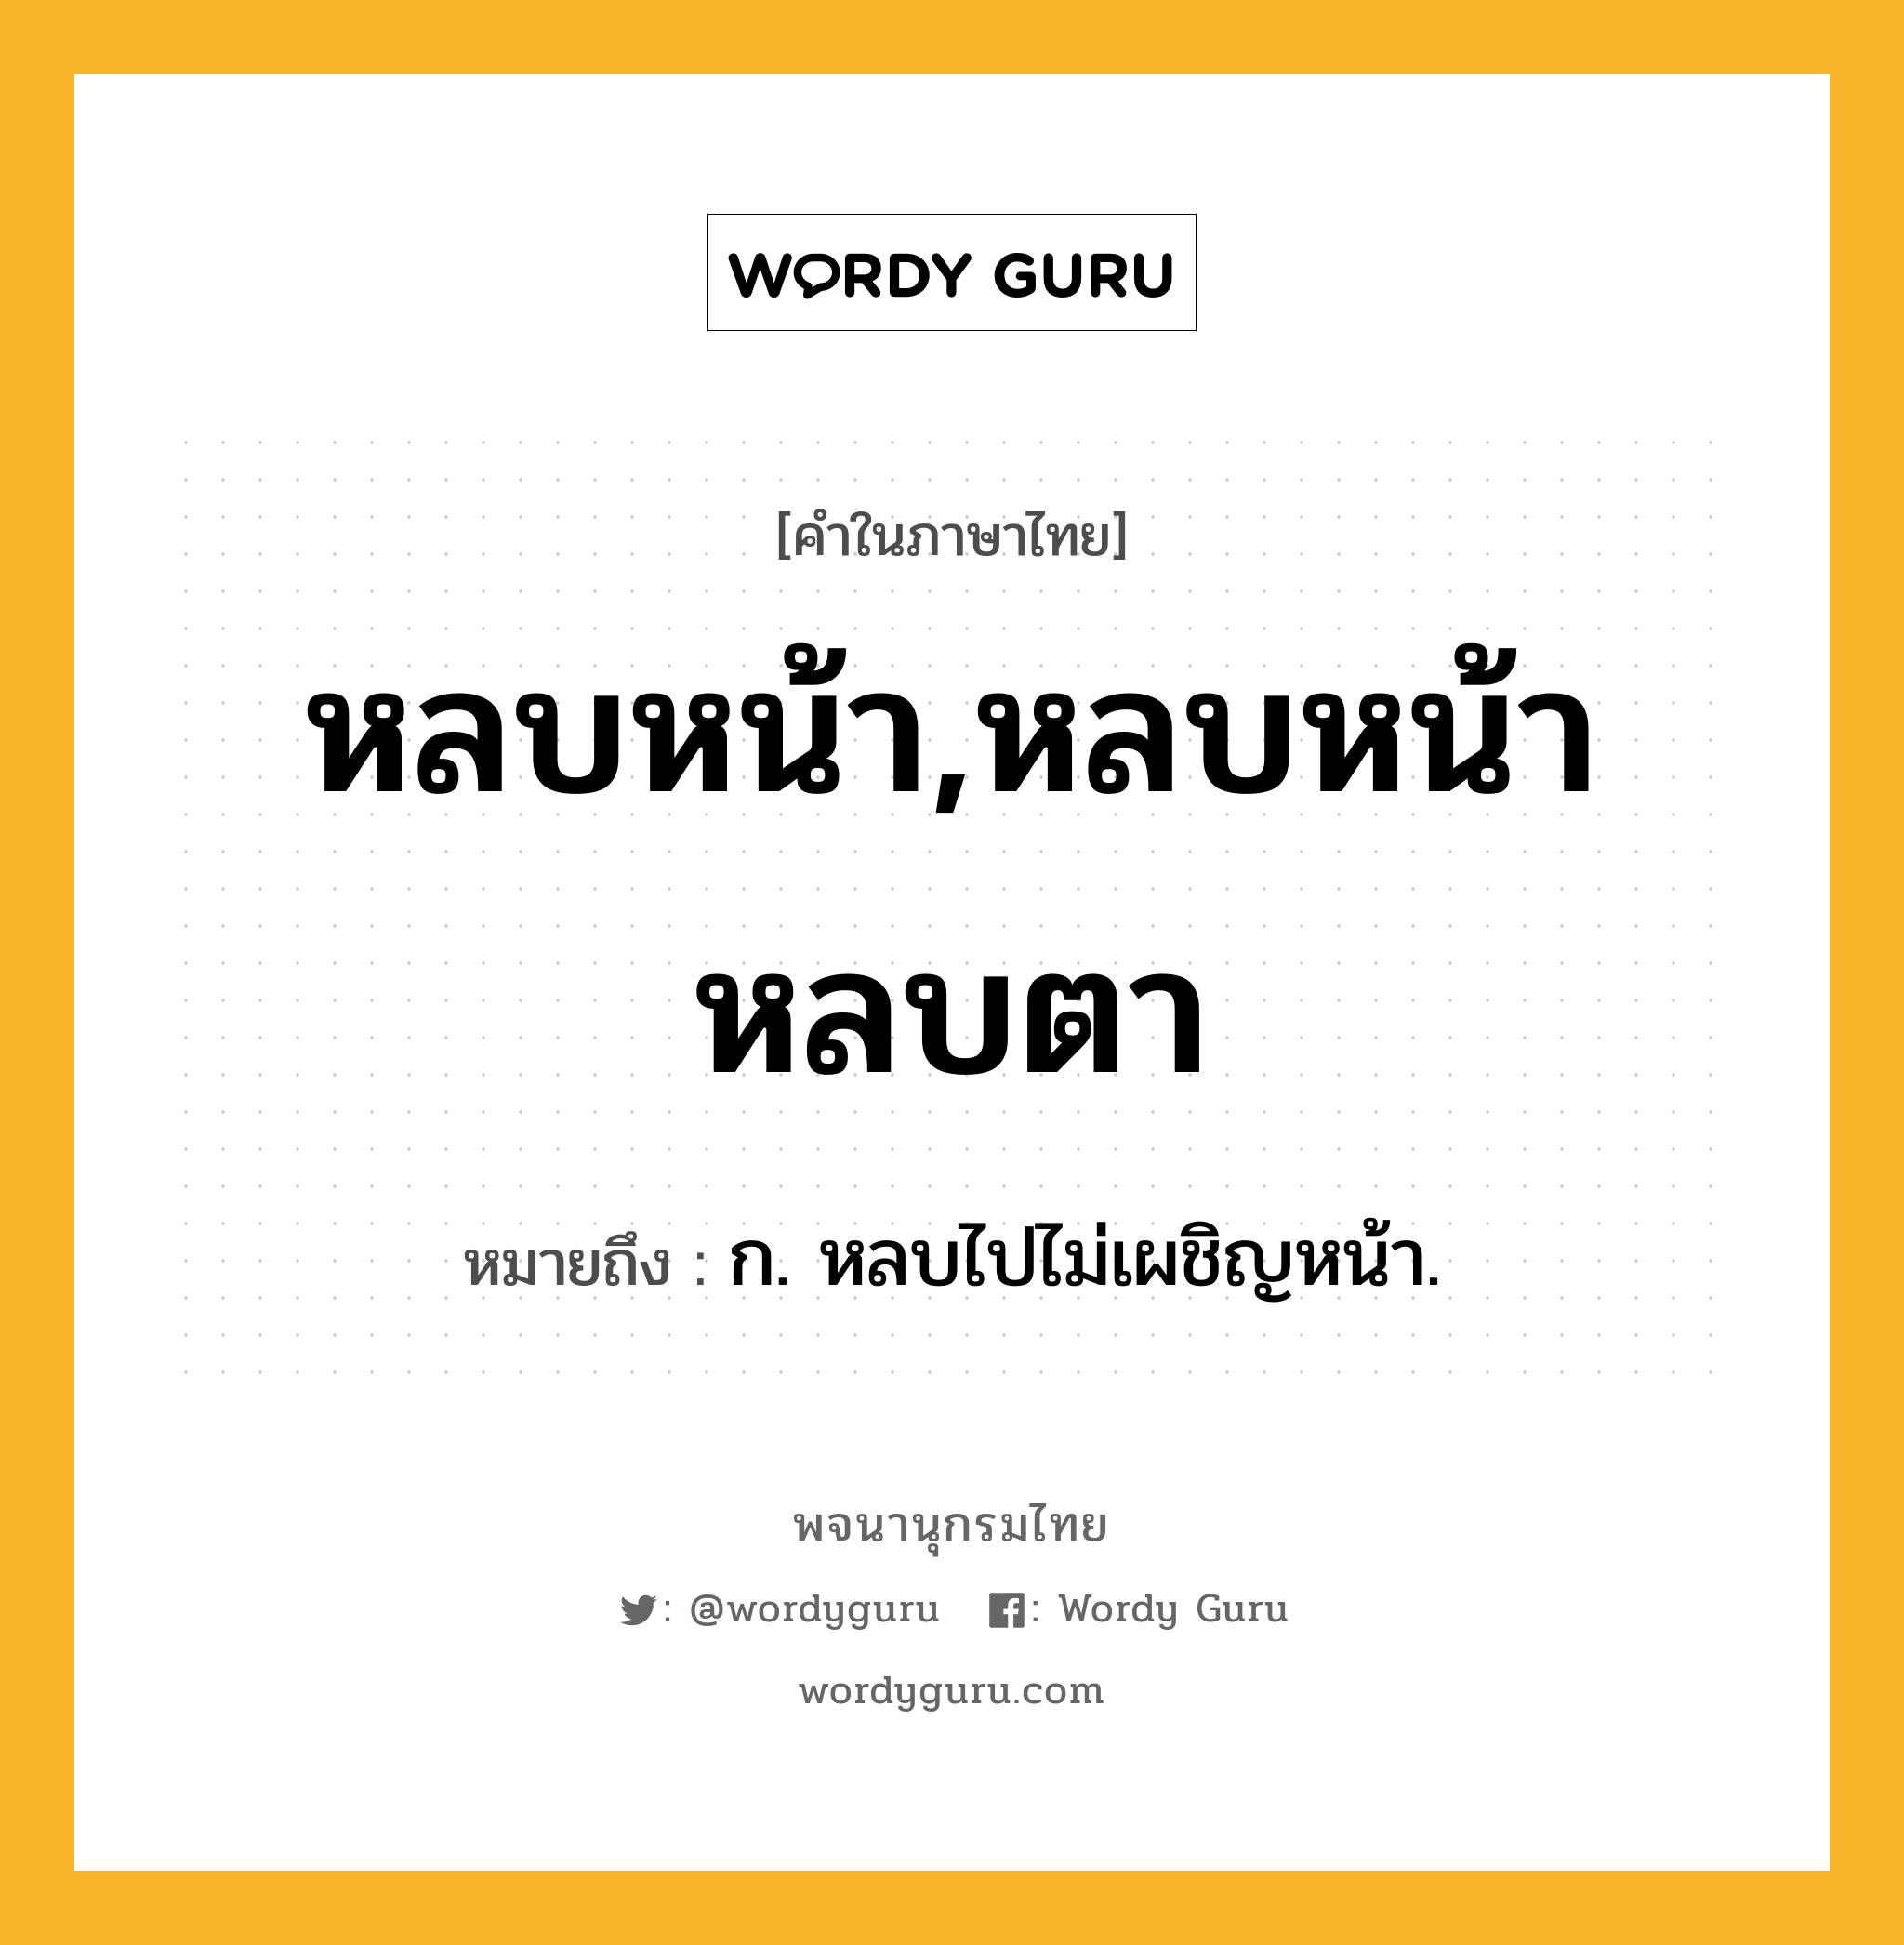 หลบหน้า,หลบหน้าหลบตา หมายถึงอะไร?, คำในภาษาไทย หลบหน้า,หลบหน้าหลบตา หมายถึง ก. หลบไปไม่เผชิญหน้า.